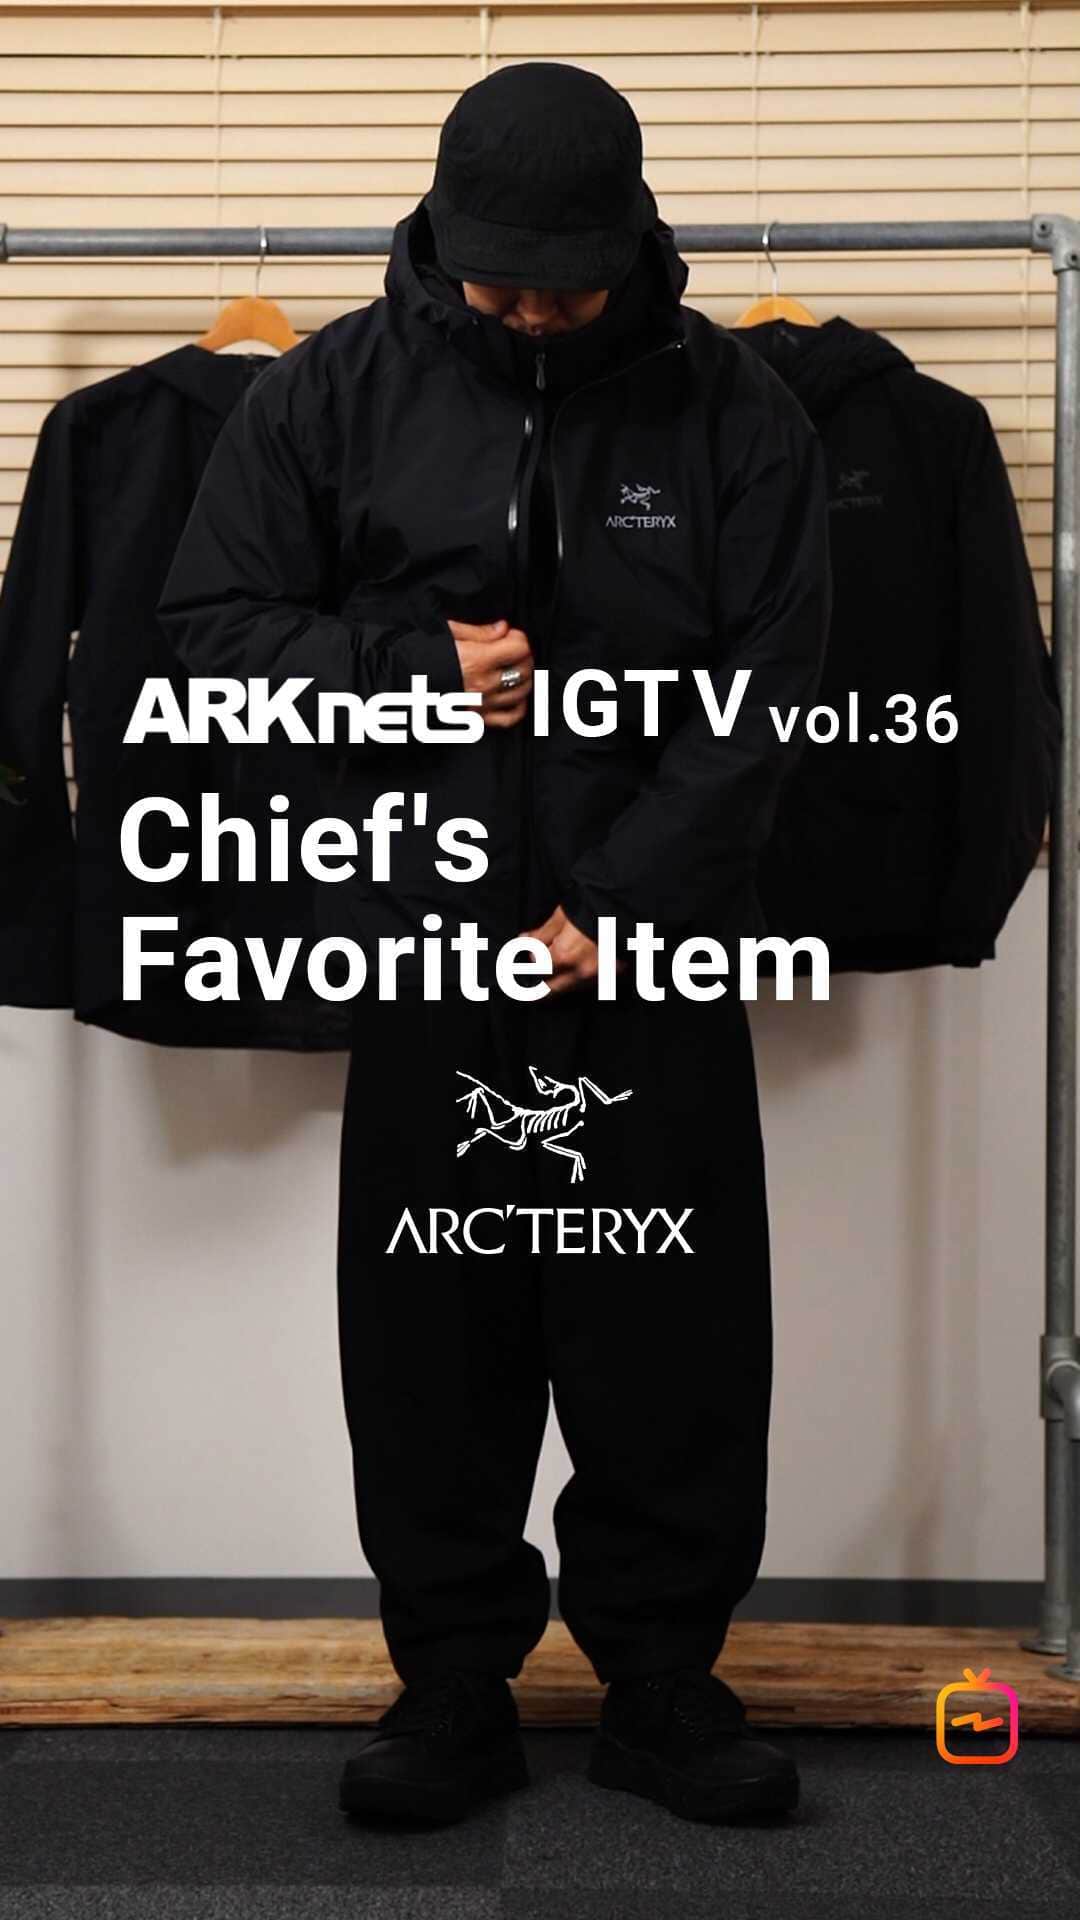 ARKnetsのインスタグラム：「・ ARKnets IGTV 〜vol.36 ・﻿ ﻿ チーフのお気に入りアイテムご紹介の第2弾になります。 今回はARC'TERYX (アークテリクス)のジャケットをご紹介いたします。 これからの季節にオススメな着方を動画の中でご紹介しています。  最後までご視聴の方を宜しくお願いいたします。  《 紹介アイテム 》  OUTER : ARC'TERYX  ITEM：Zeta SL Jacket  SIZE：XL https://www.arknets.co.jp/g/gL07129700xsblk/  OUTER : ARC'TERYX  ITEM：Atom AR Hoody Men's SIZE：L https://www.arknets.co.jp/g/gL07403500xsblk/  FLEECE :  WP ITEM：MILITARY FLEECE JACKET SIZE：XXL https://www.arknets.co.jp/g/gWP06-F001lf-grn/  JACKET﻿：GOLD﻿ ITEM：14oz. DENIM TRUCKER JACKET﻿ size:M﻿ https://www.arknets.co.jp/g/gGL14666Asblk/﻿  PANTS: GOLD ITEM :  14oz. DENIM 5POCKET WIDE PANTS HARD WASHED SIZE：M https://www.arknets.co.jp/g/gGL41935Hsnav/  SHOES : CONVERSE ITEM :  CANVAS ALL STAR J OX SIZE：27cm https://www.arknets.co.jp/g/g3130165026org/  SHOES : marka ITEM :  DOUBLE SOLE TRAILRUNNER "OX" - nubuck - SIZE：2 https://www.arknets.co.jp/g/gM20F-22BT01C1blk/  << ARKnets Official Instagram >>﻿ @arknets_official﻿ ﻿ << ARKnets Official HP >>﻿ https://www.arknets.co.jp﻿/ ﻿ << Heavy Smoker’s Blog >>﻿ https://ameblo.jp/arknets/﻿   #arcteryx #zetasl #ゼータsl  #goretex #ゴアテックス  #jacket #ジャケット #outdoor #アウトドア #コーディネイト #ARKnets #栃木 #宇都宮 #セレクトショップ #ファッション #styling #スタイリング #スタイル #fashion #20aw #2020aw」